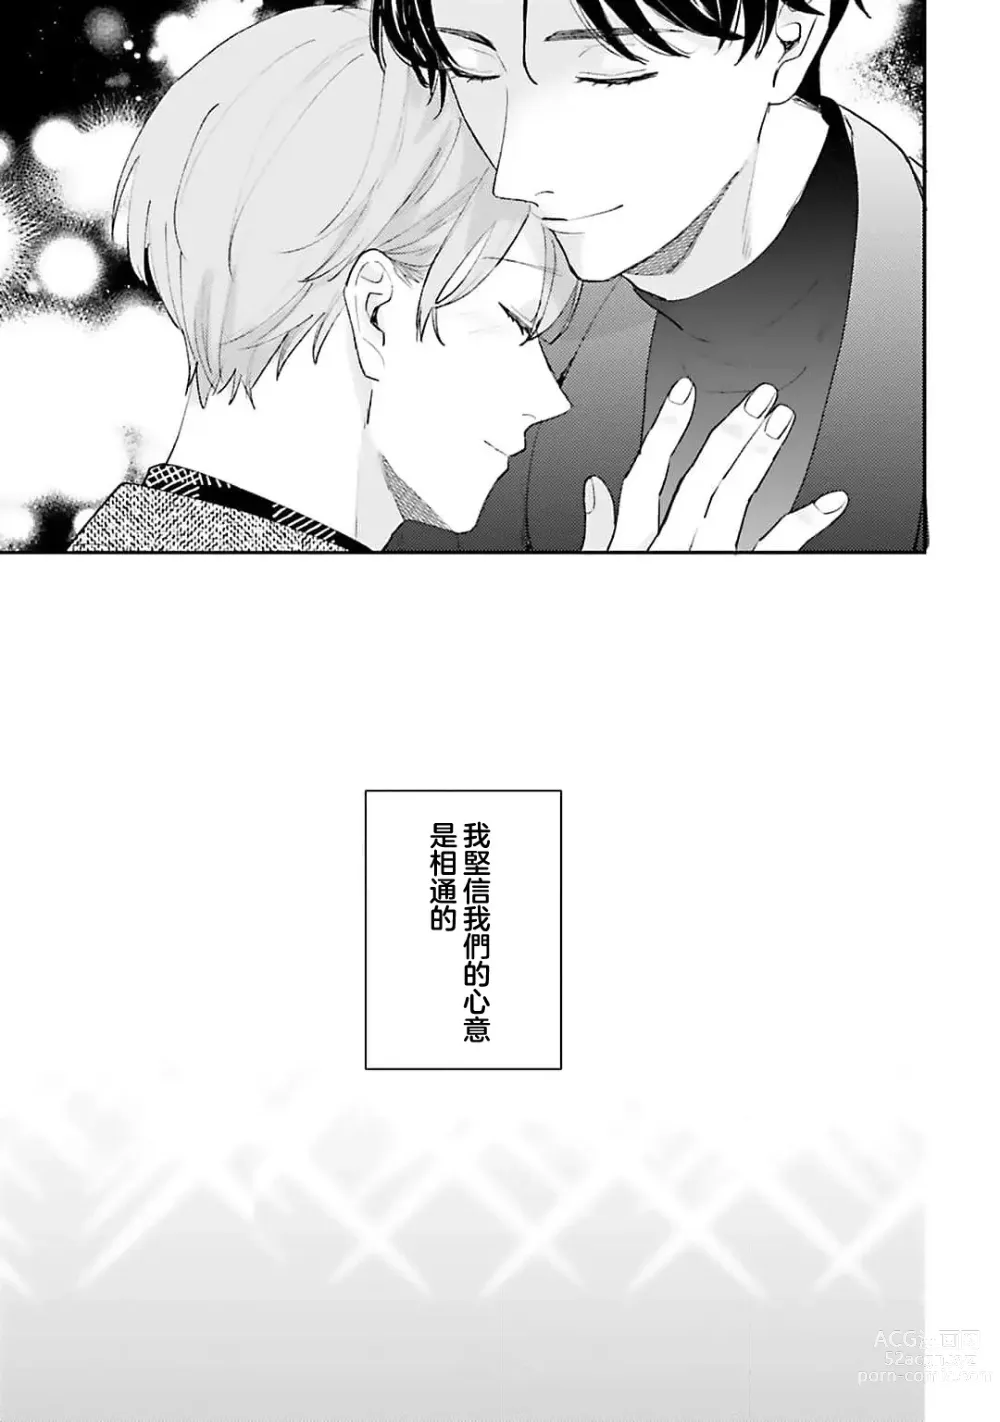 Page 151 of manga 绽放的恋爱皆为醉与甜1-5